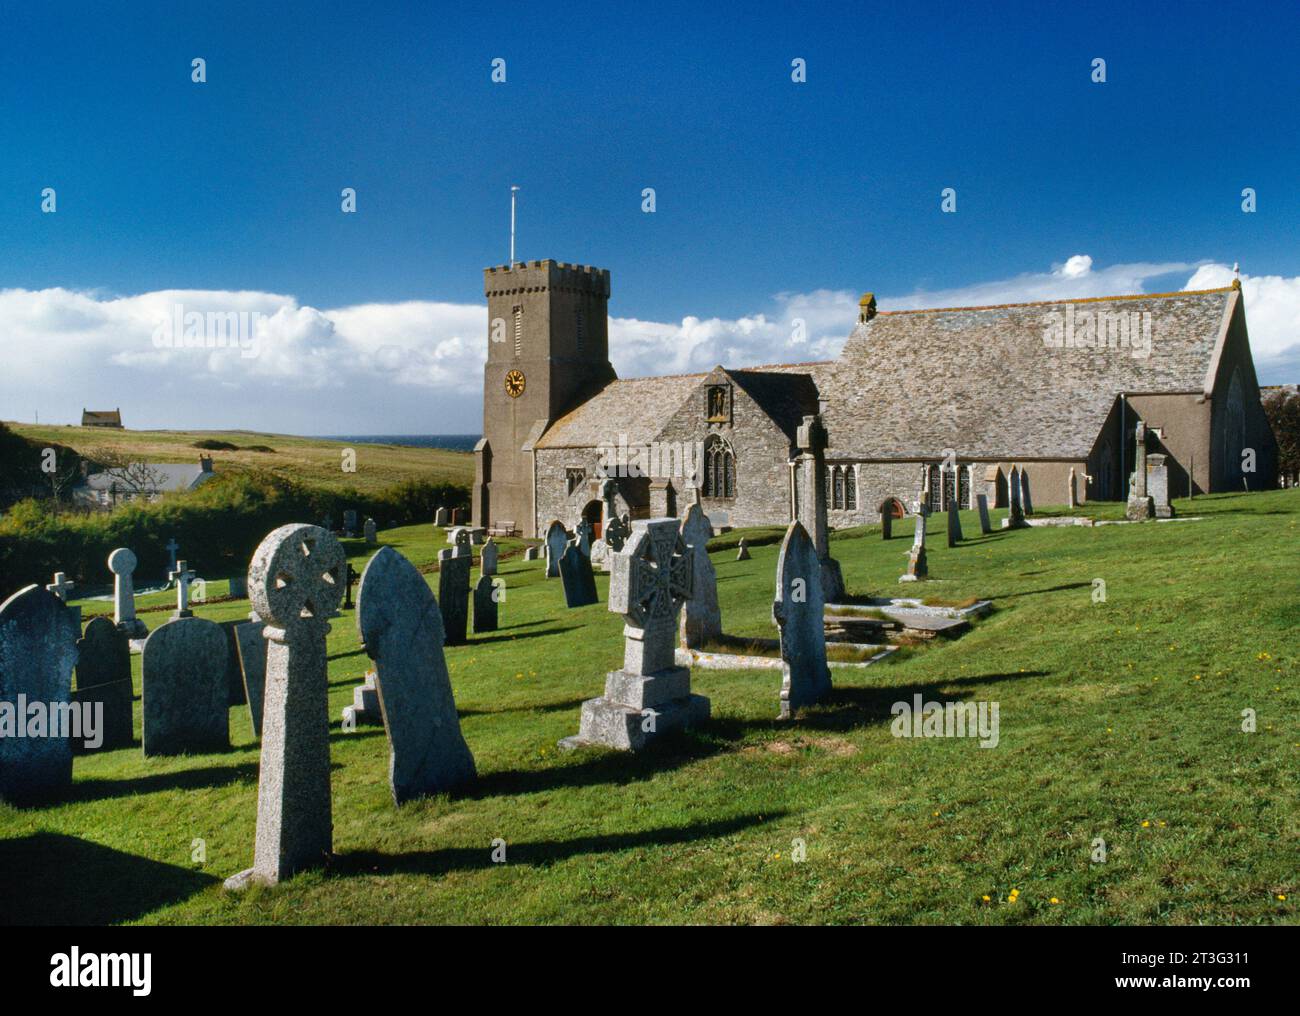 Vista WNW della chiesa di St Carantoc, Cornovaglia, Inghilterra, Regno Unito: Navata normanna ricostruita, C14th Chancel, torre C15th. Fondata per la prima volta dalla C5th Welsh St Carantoc Foto Stock